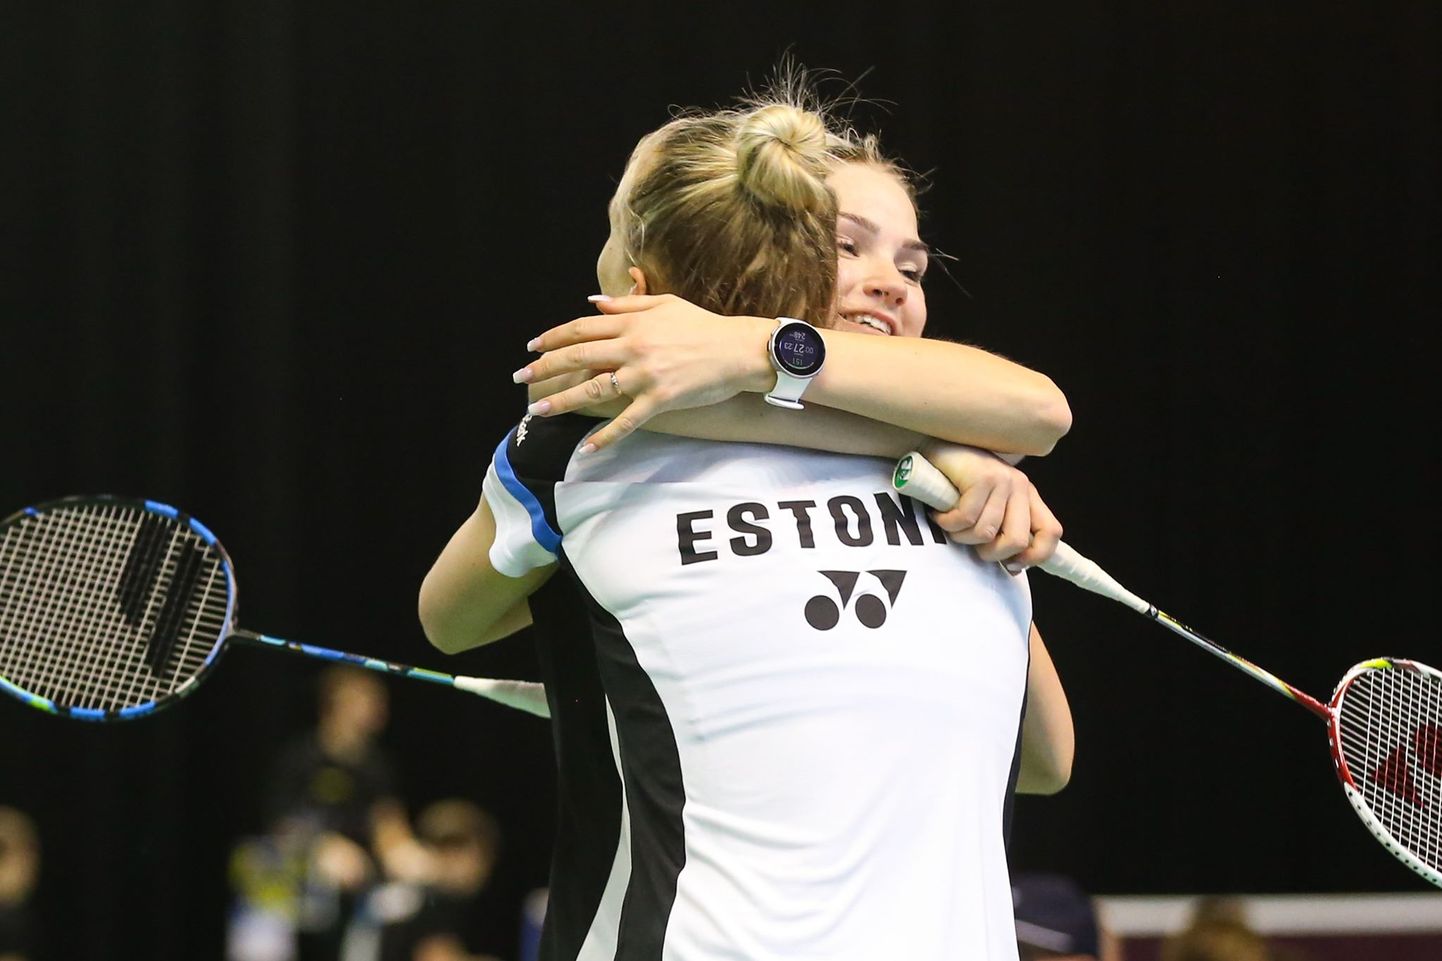 сборная Эстонии сумела победить в пятиматчевом противостоянии сильную сборную Голландии